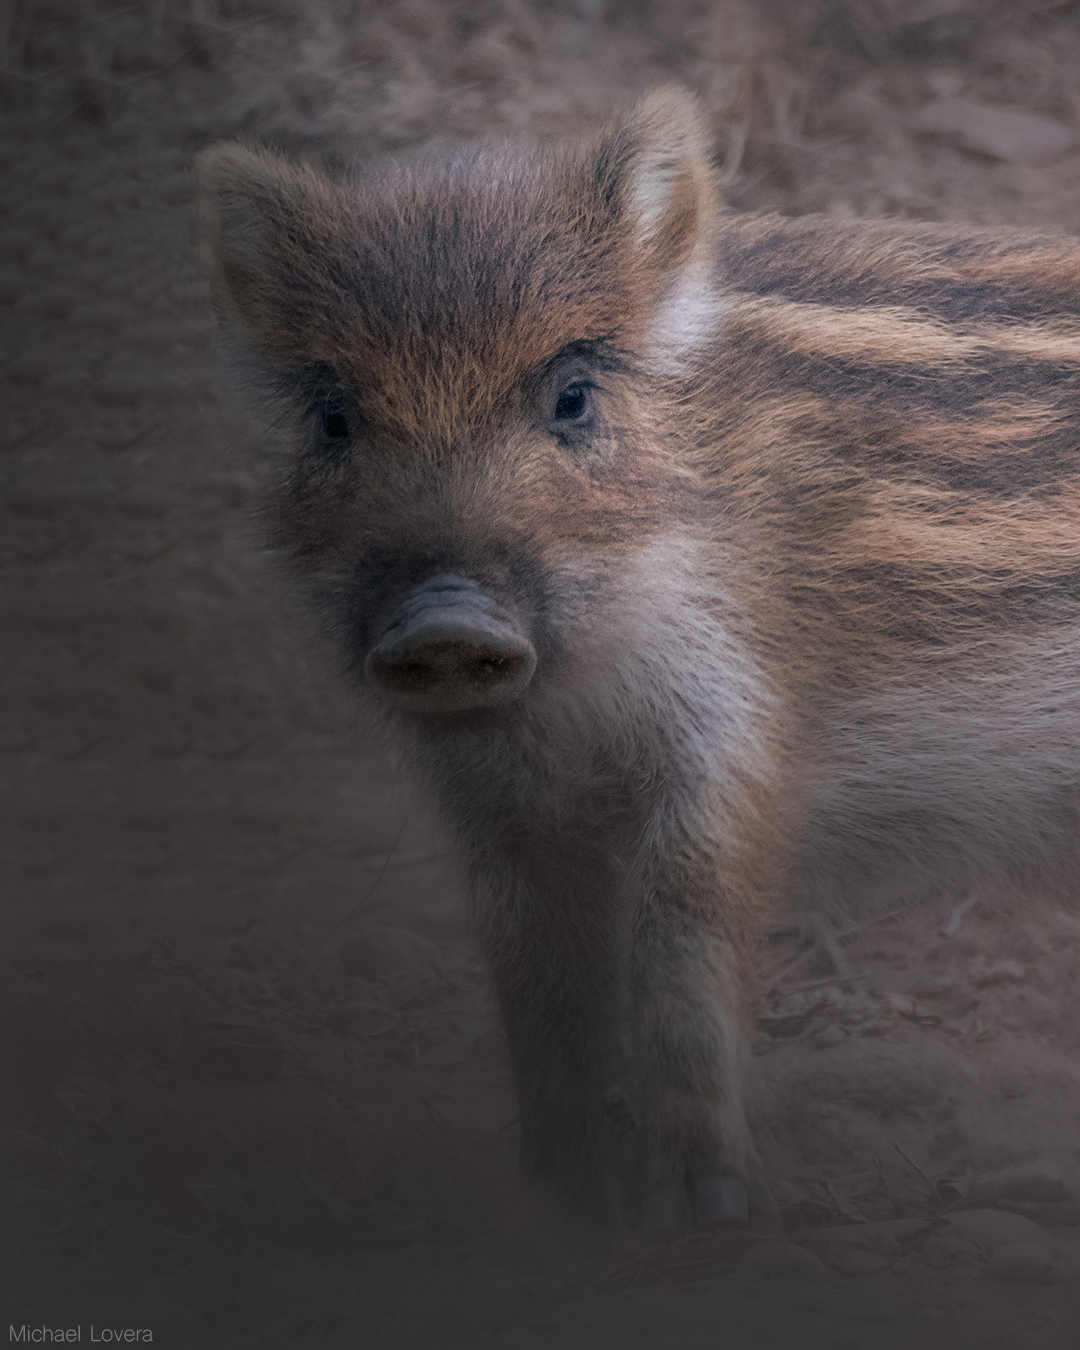 The little boar...